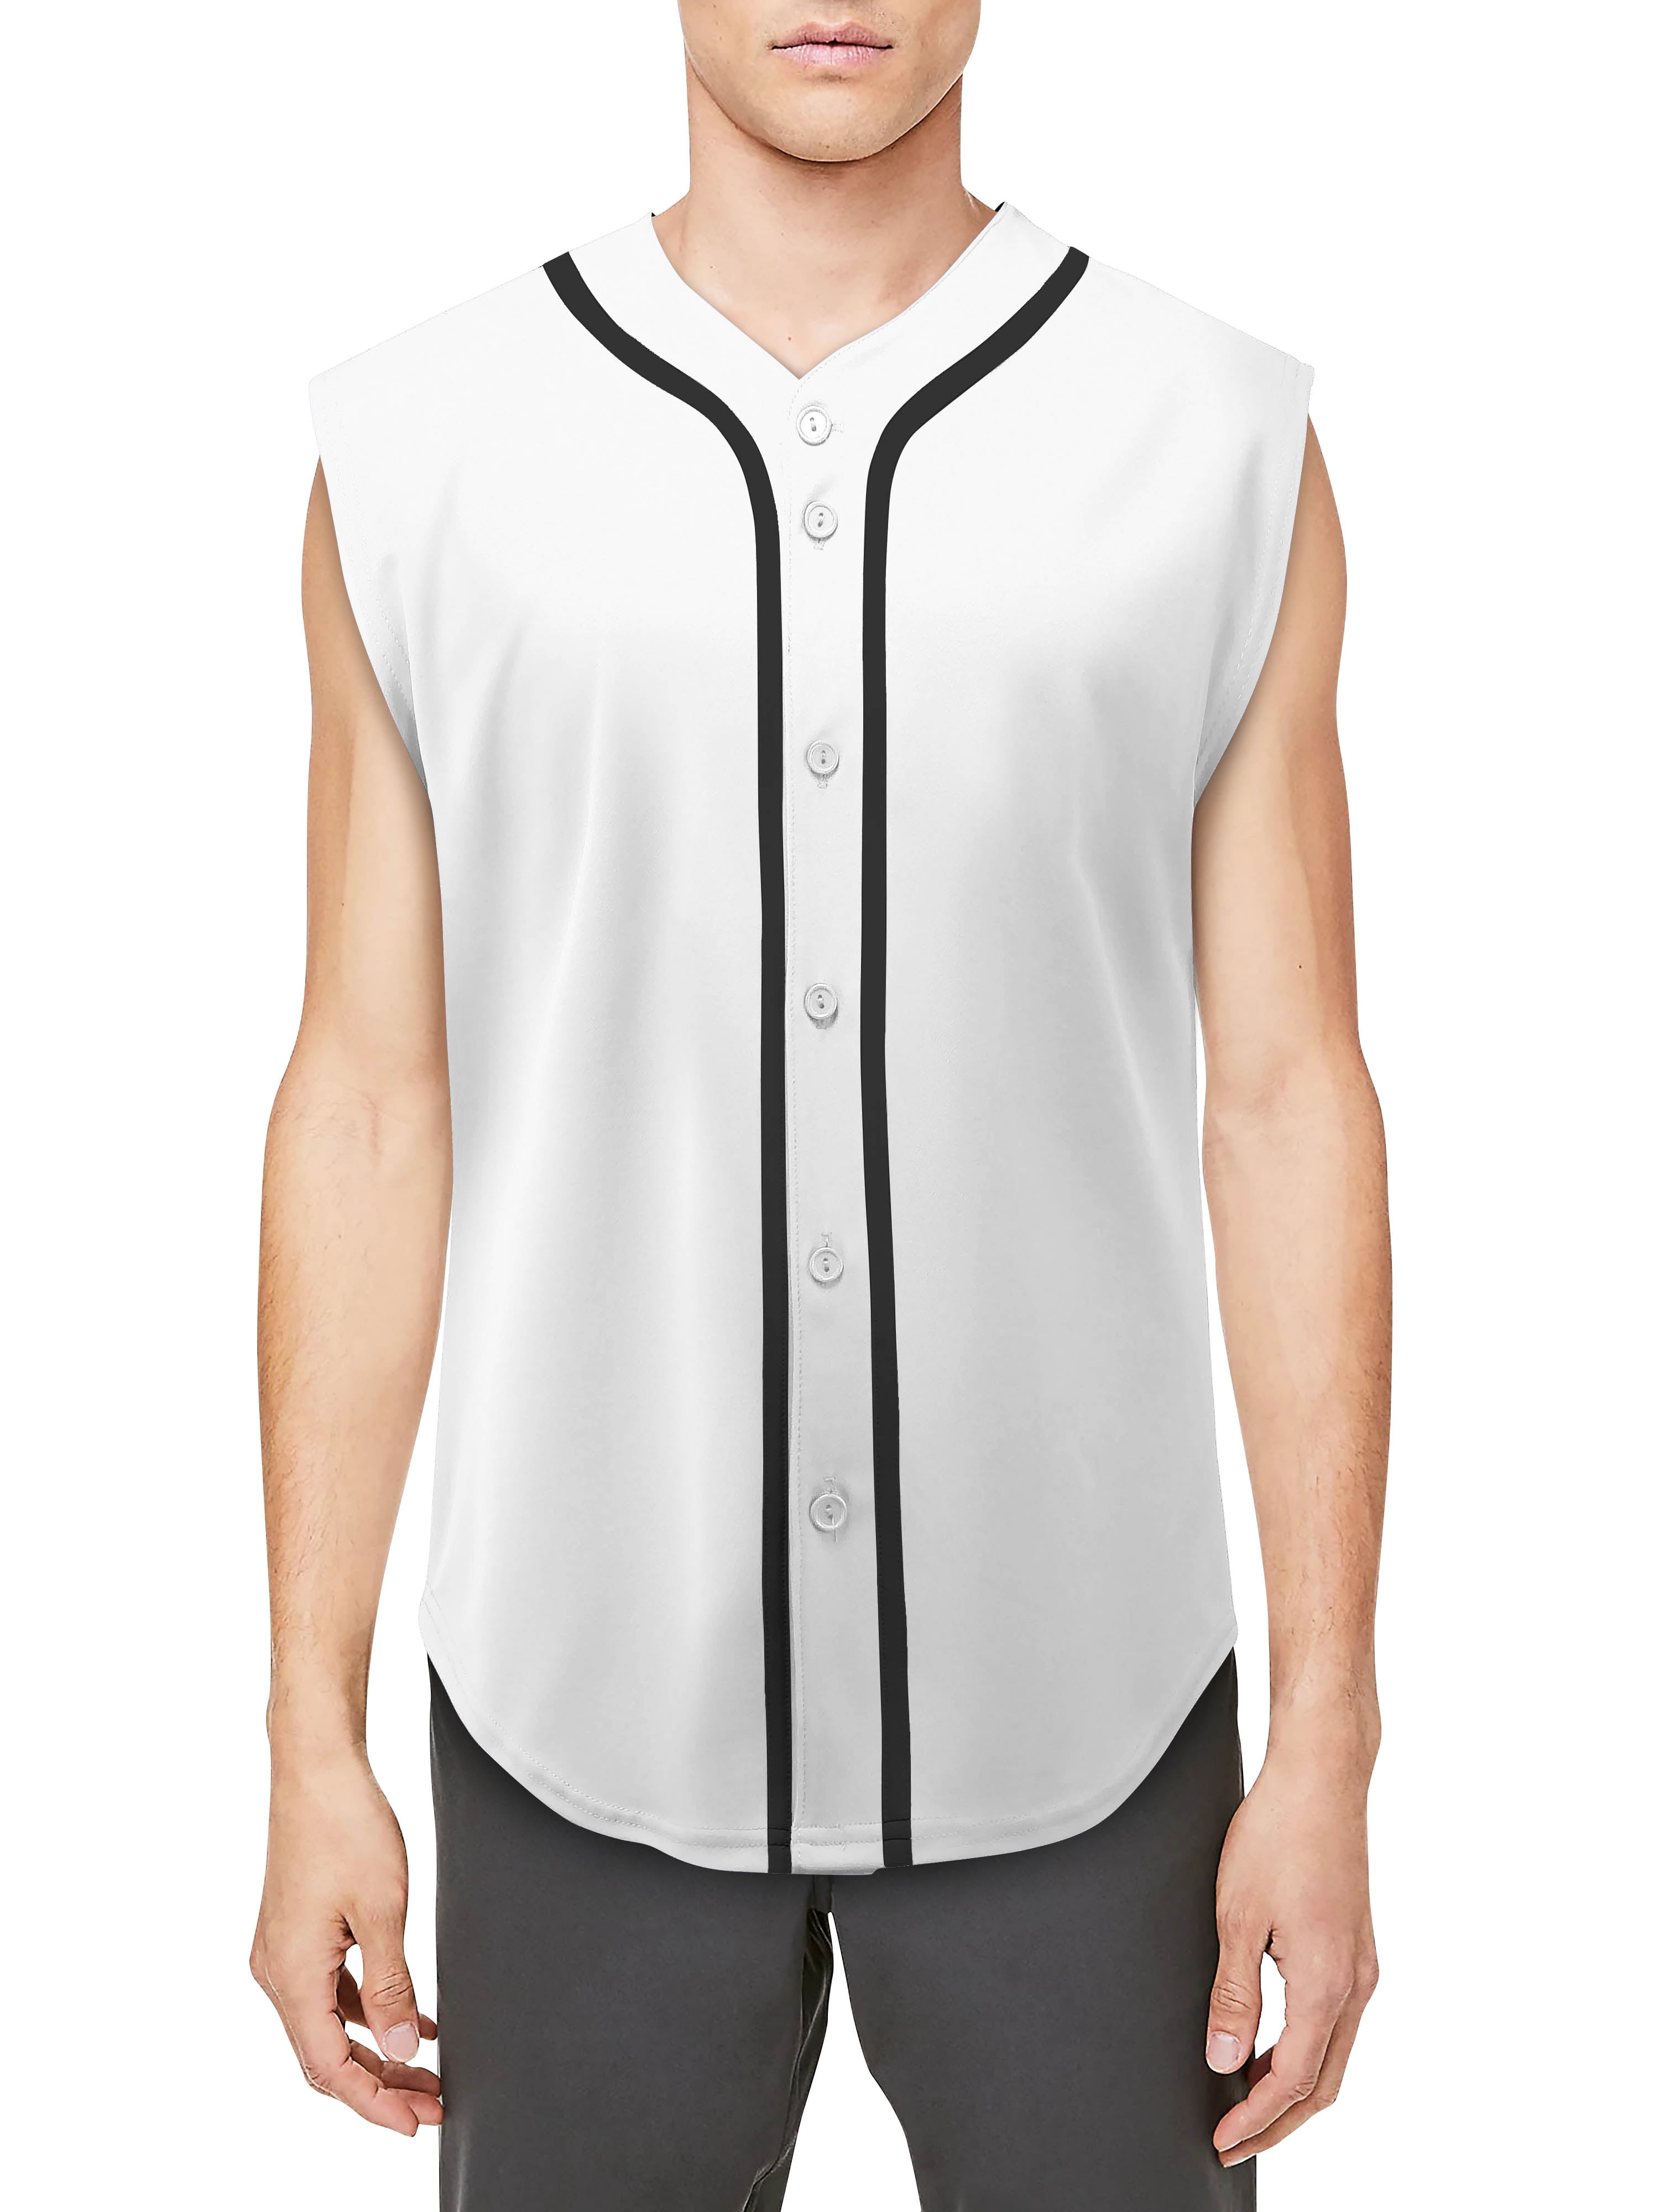 sleeveless baseball jersey